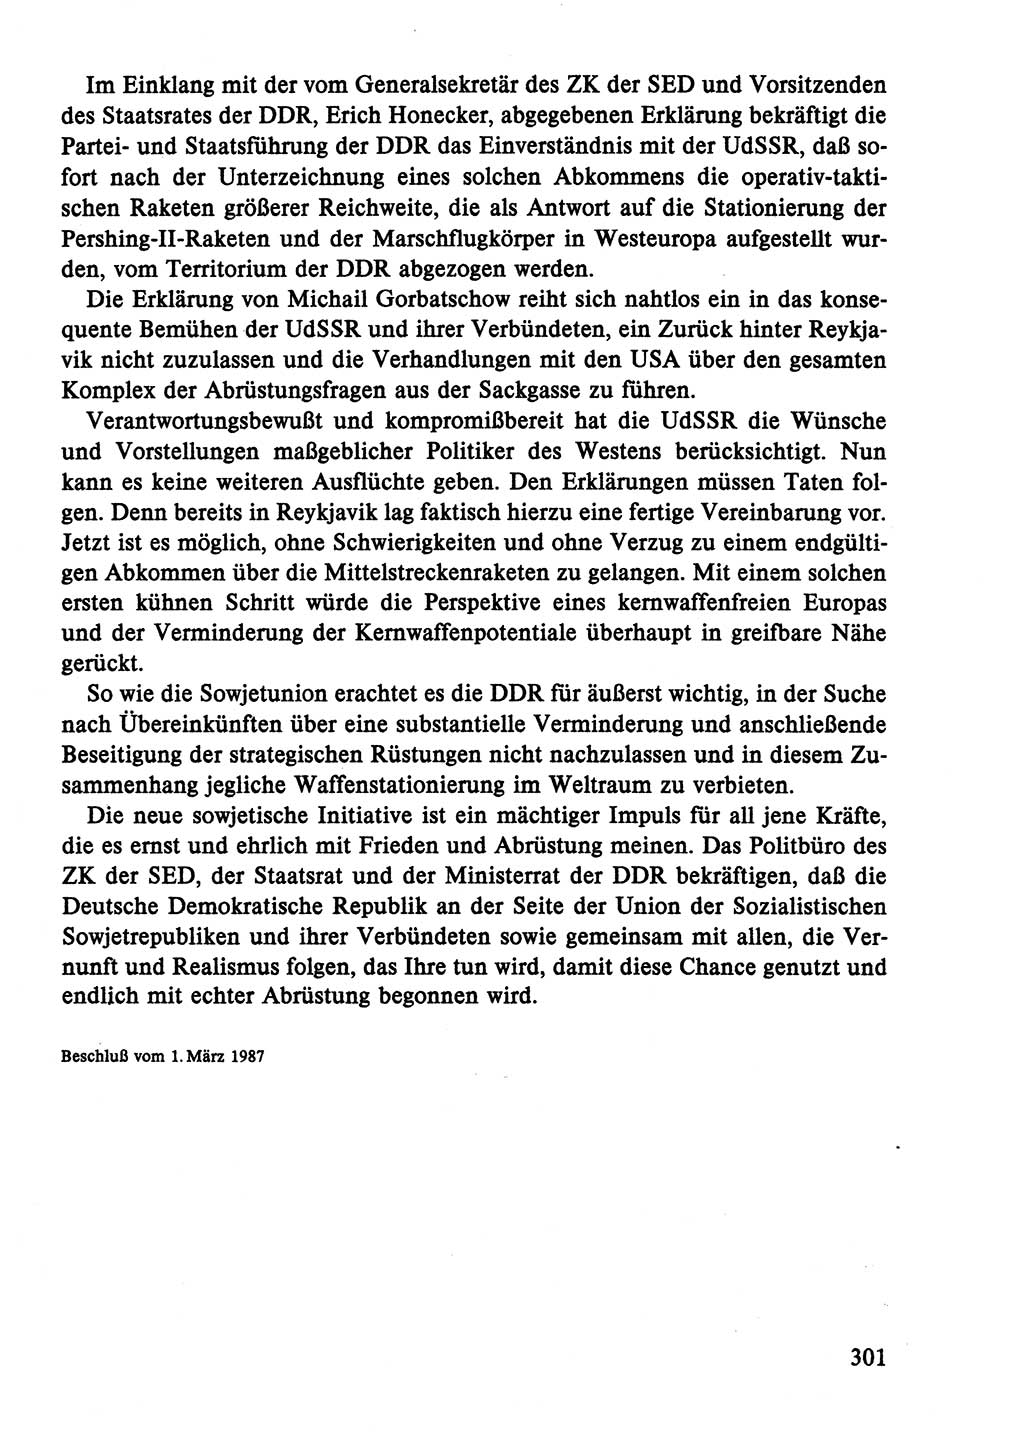 Dokumente der Sozialistischen Einheitspartei Deutschlands (SED) [Deutsche Demokratische Republik (DDR)] 1986-1987, Seite 301 (Dok. SED DDR 1986-1987, S. 301)